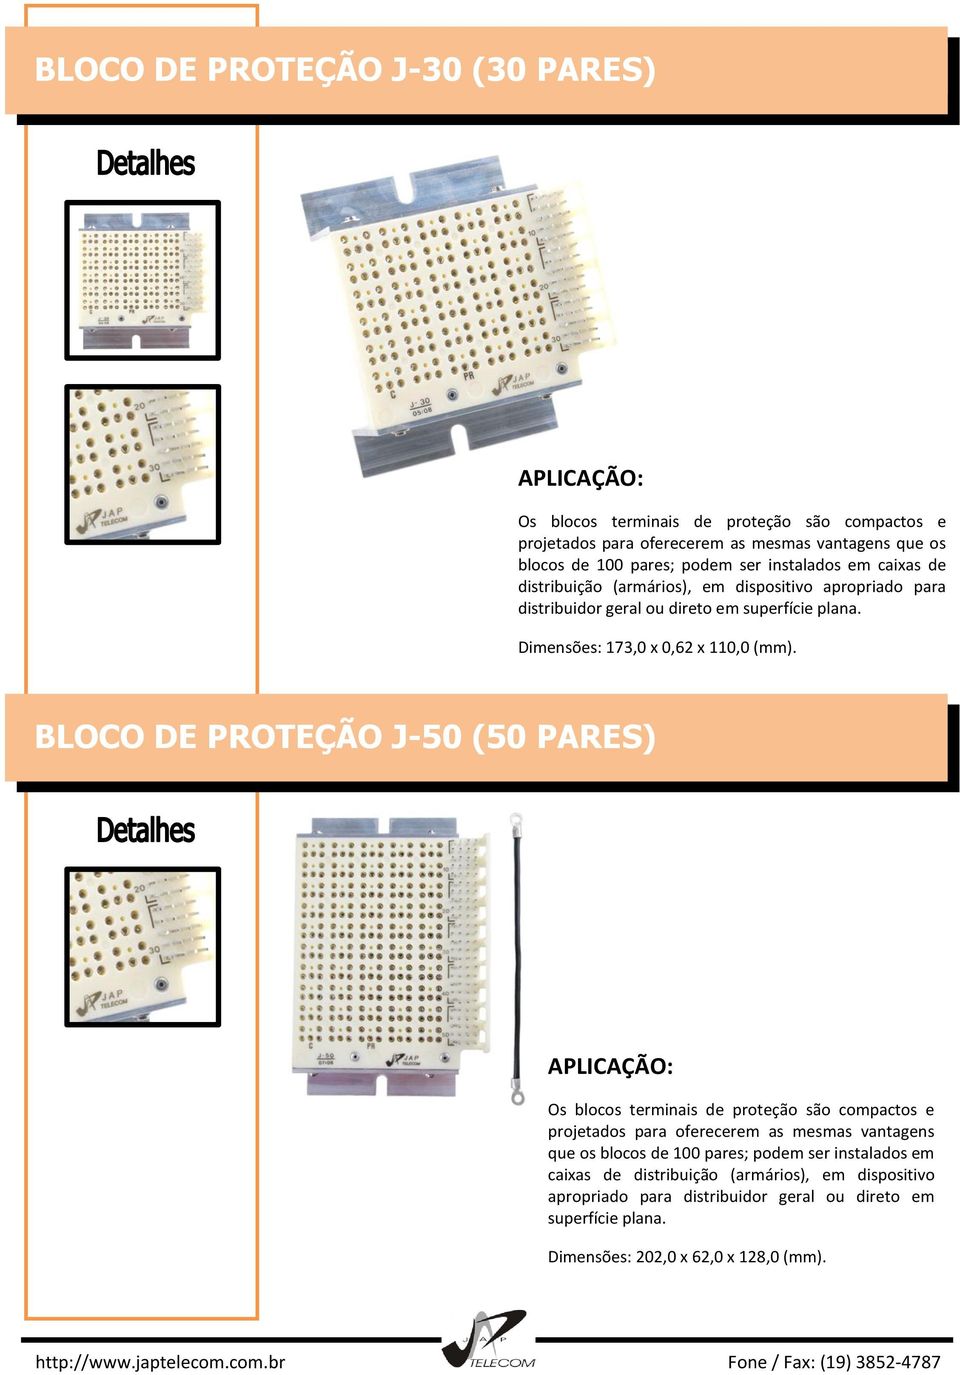 BLOCO DE PROTEÇÃO J-50 (50 PARES) Os blocos terminais de proteção são compactos e projetados para oferecerem as mesmas vantagens que os blocos de 100 pares; podem ser